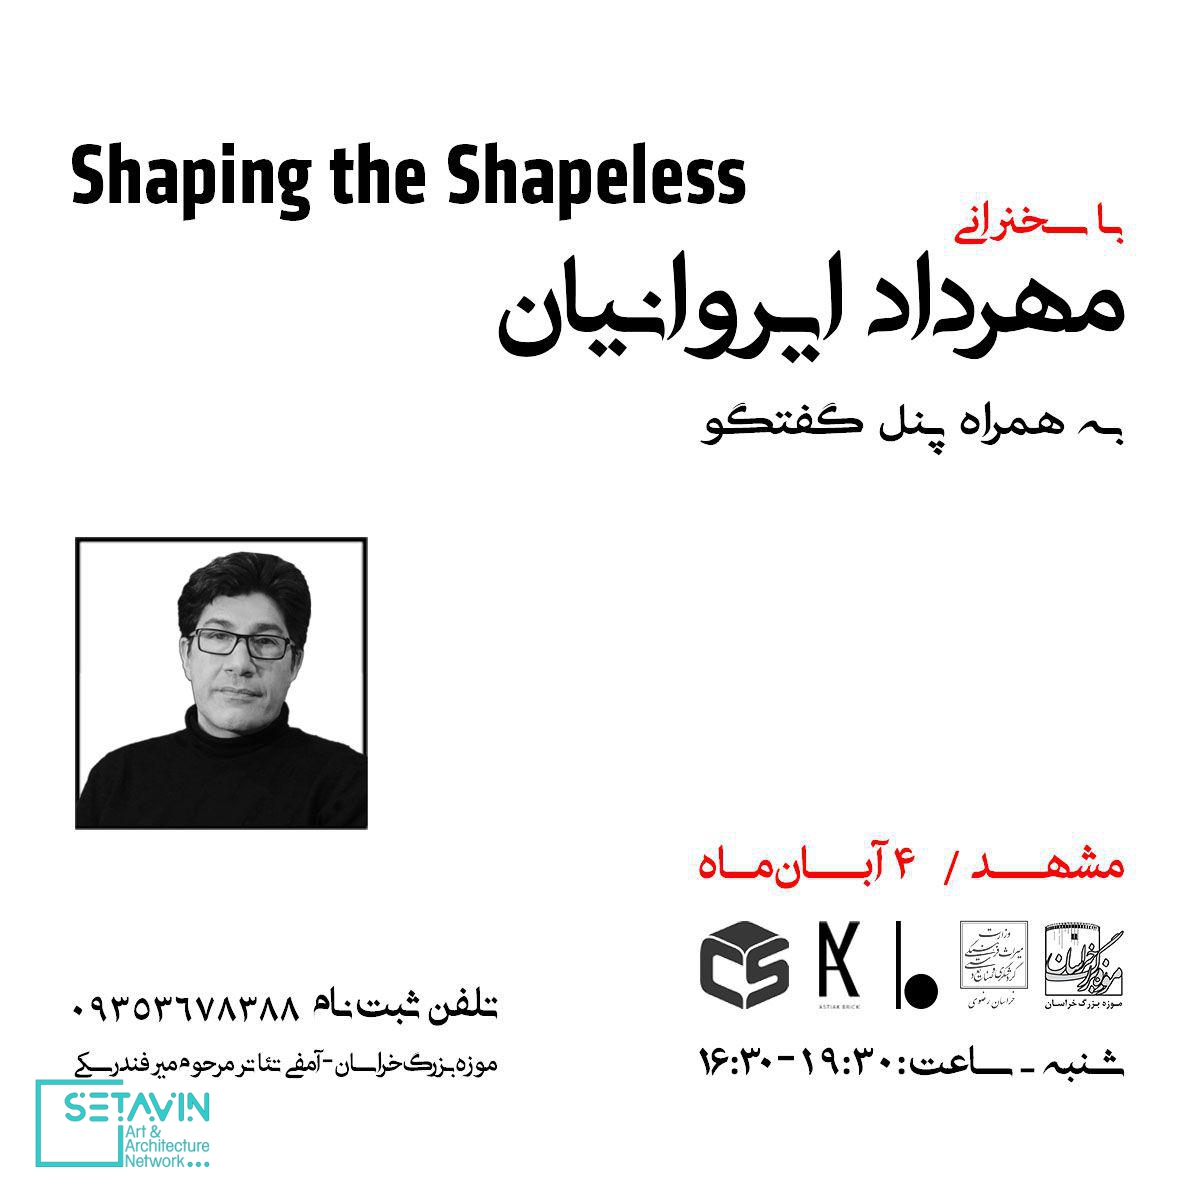 سخنرانی مهندس مهرداد ایروانیان ( Shaping the shapeless )